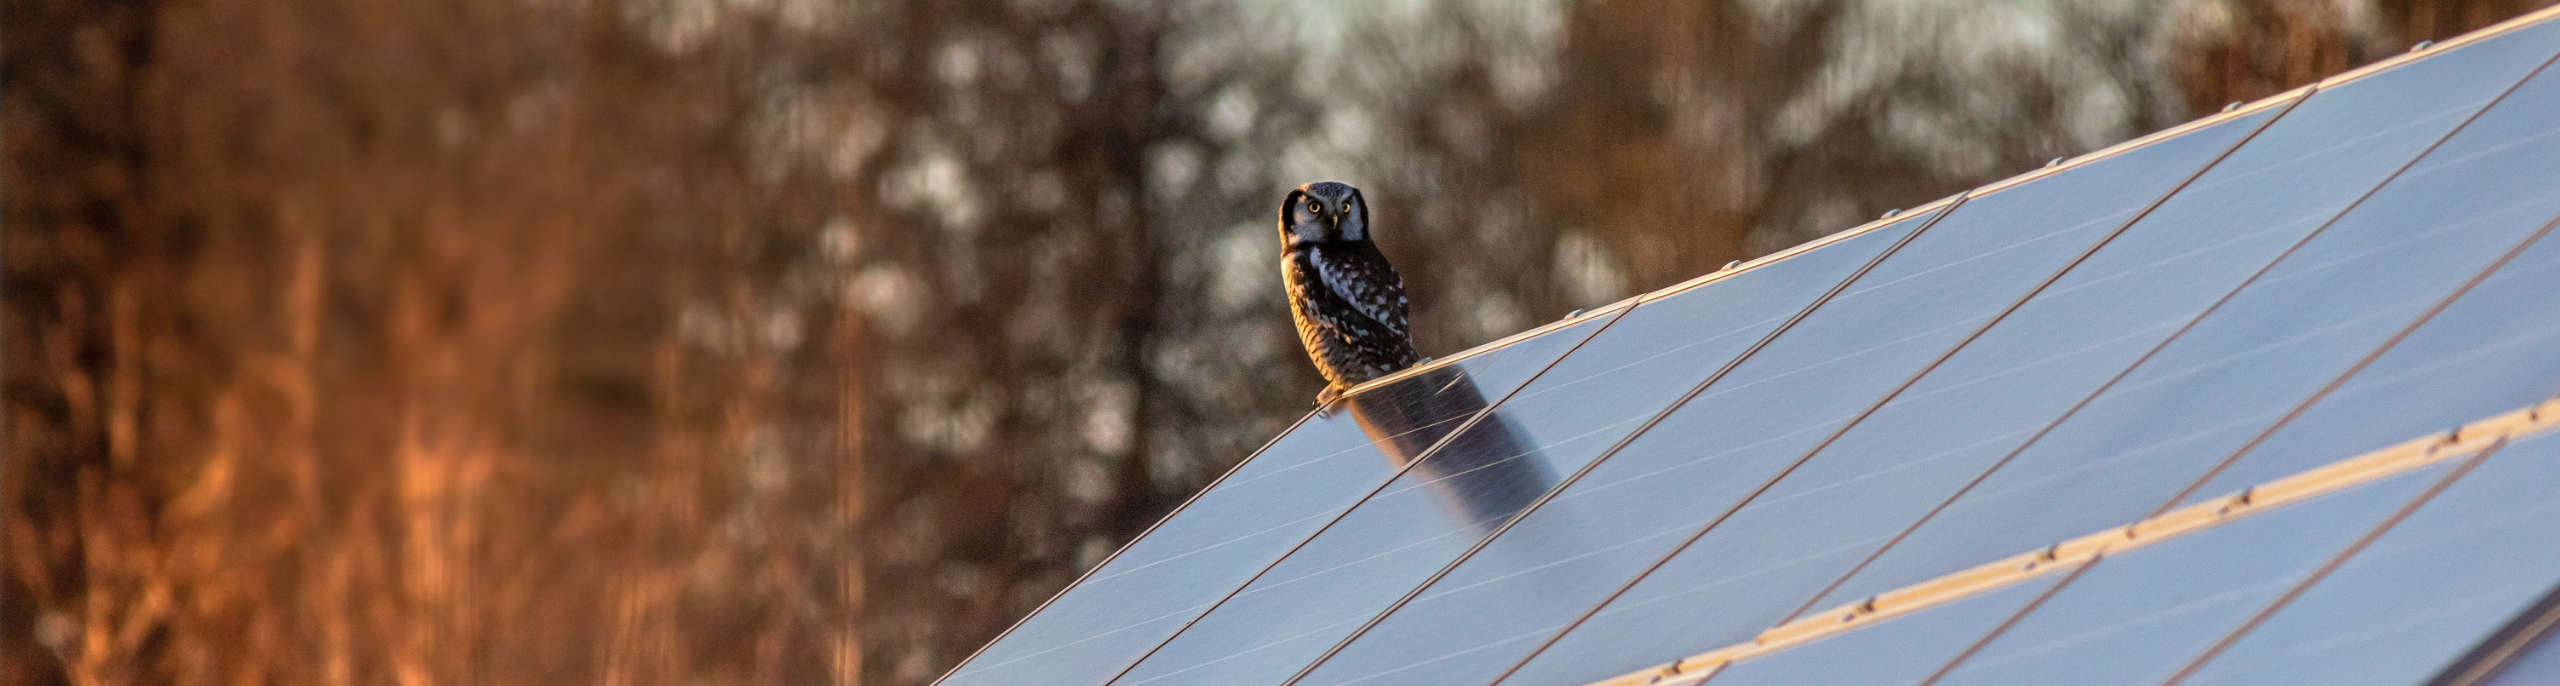 Solární panely a ní nich sedí sova